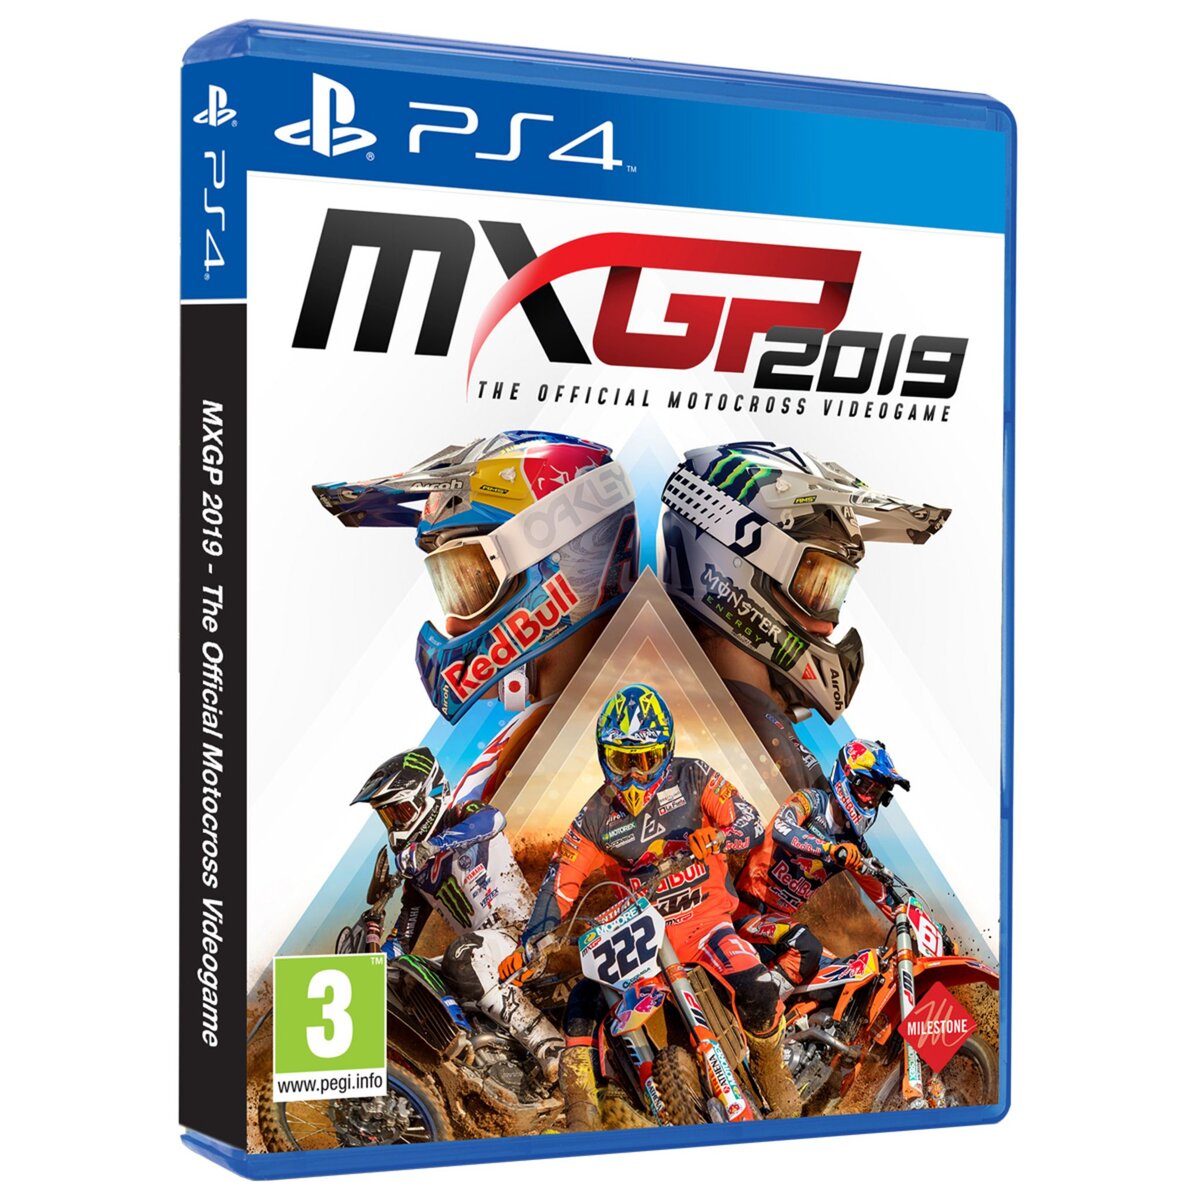 MXGP 2019 PS4